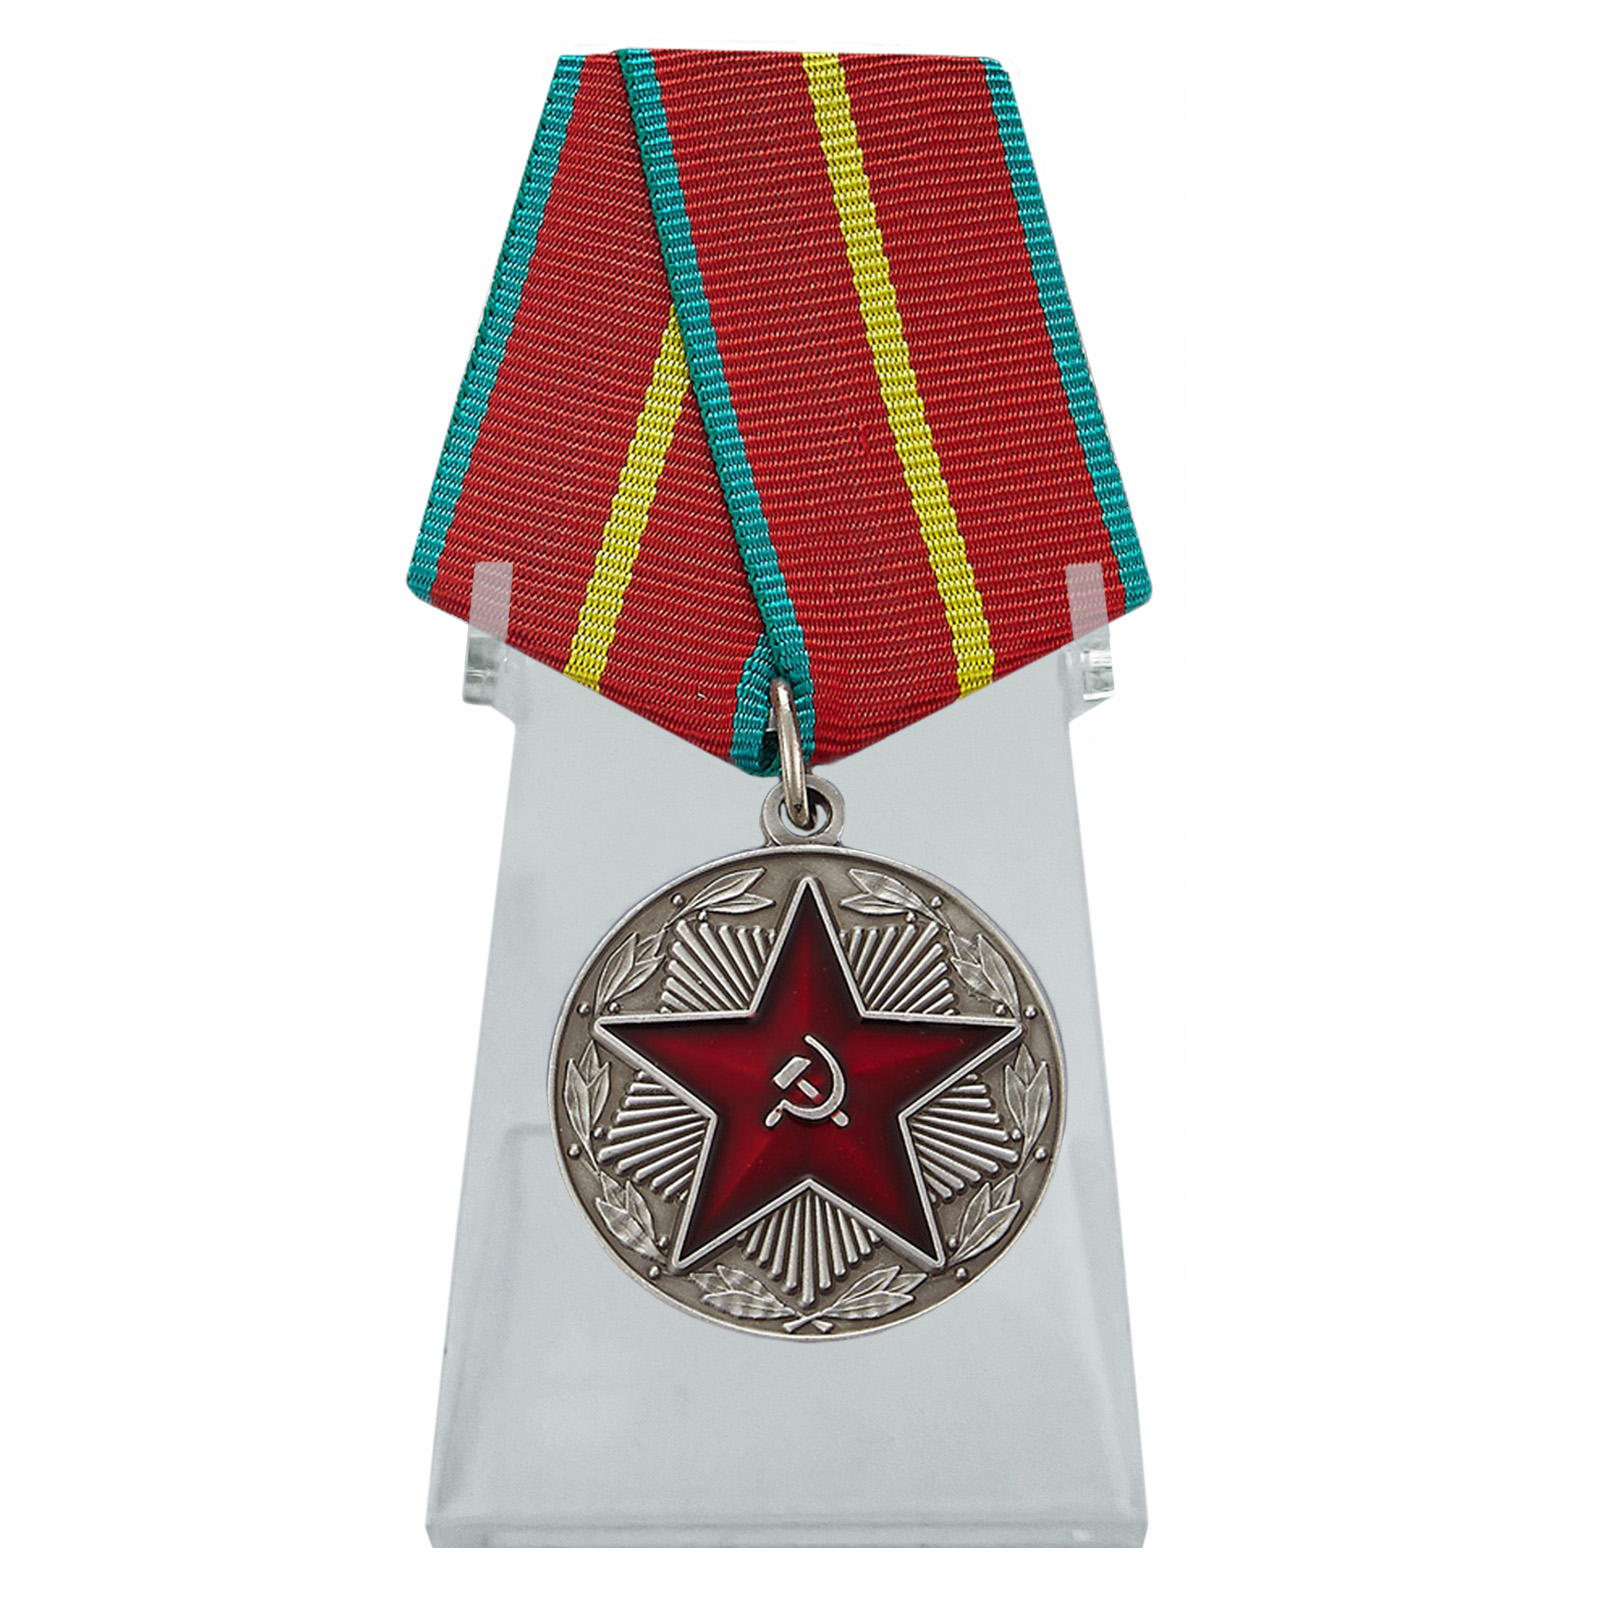 Медаль "За безупречную службу" ВС СССР на подставке